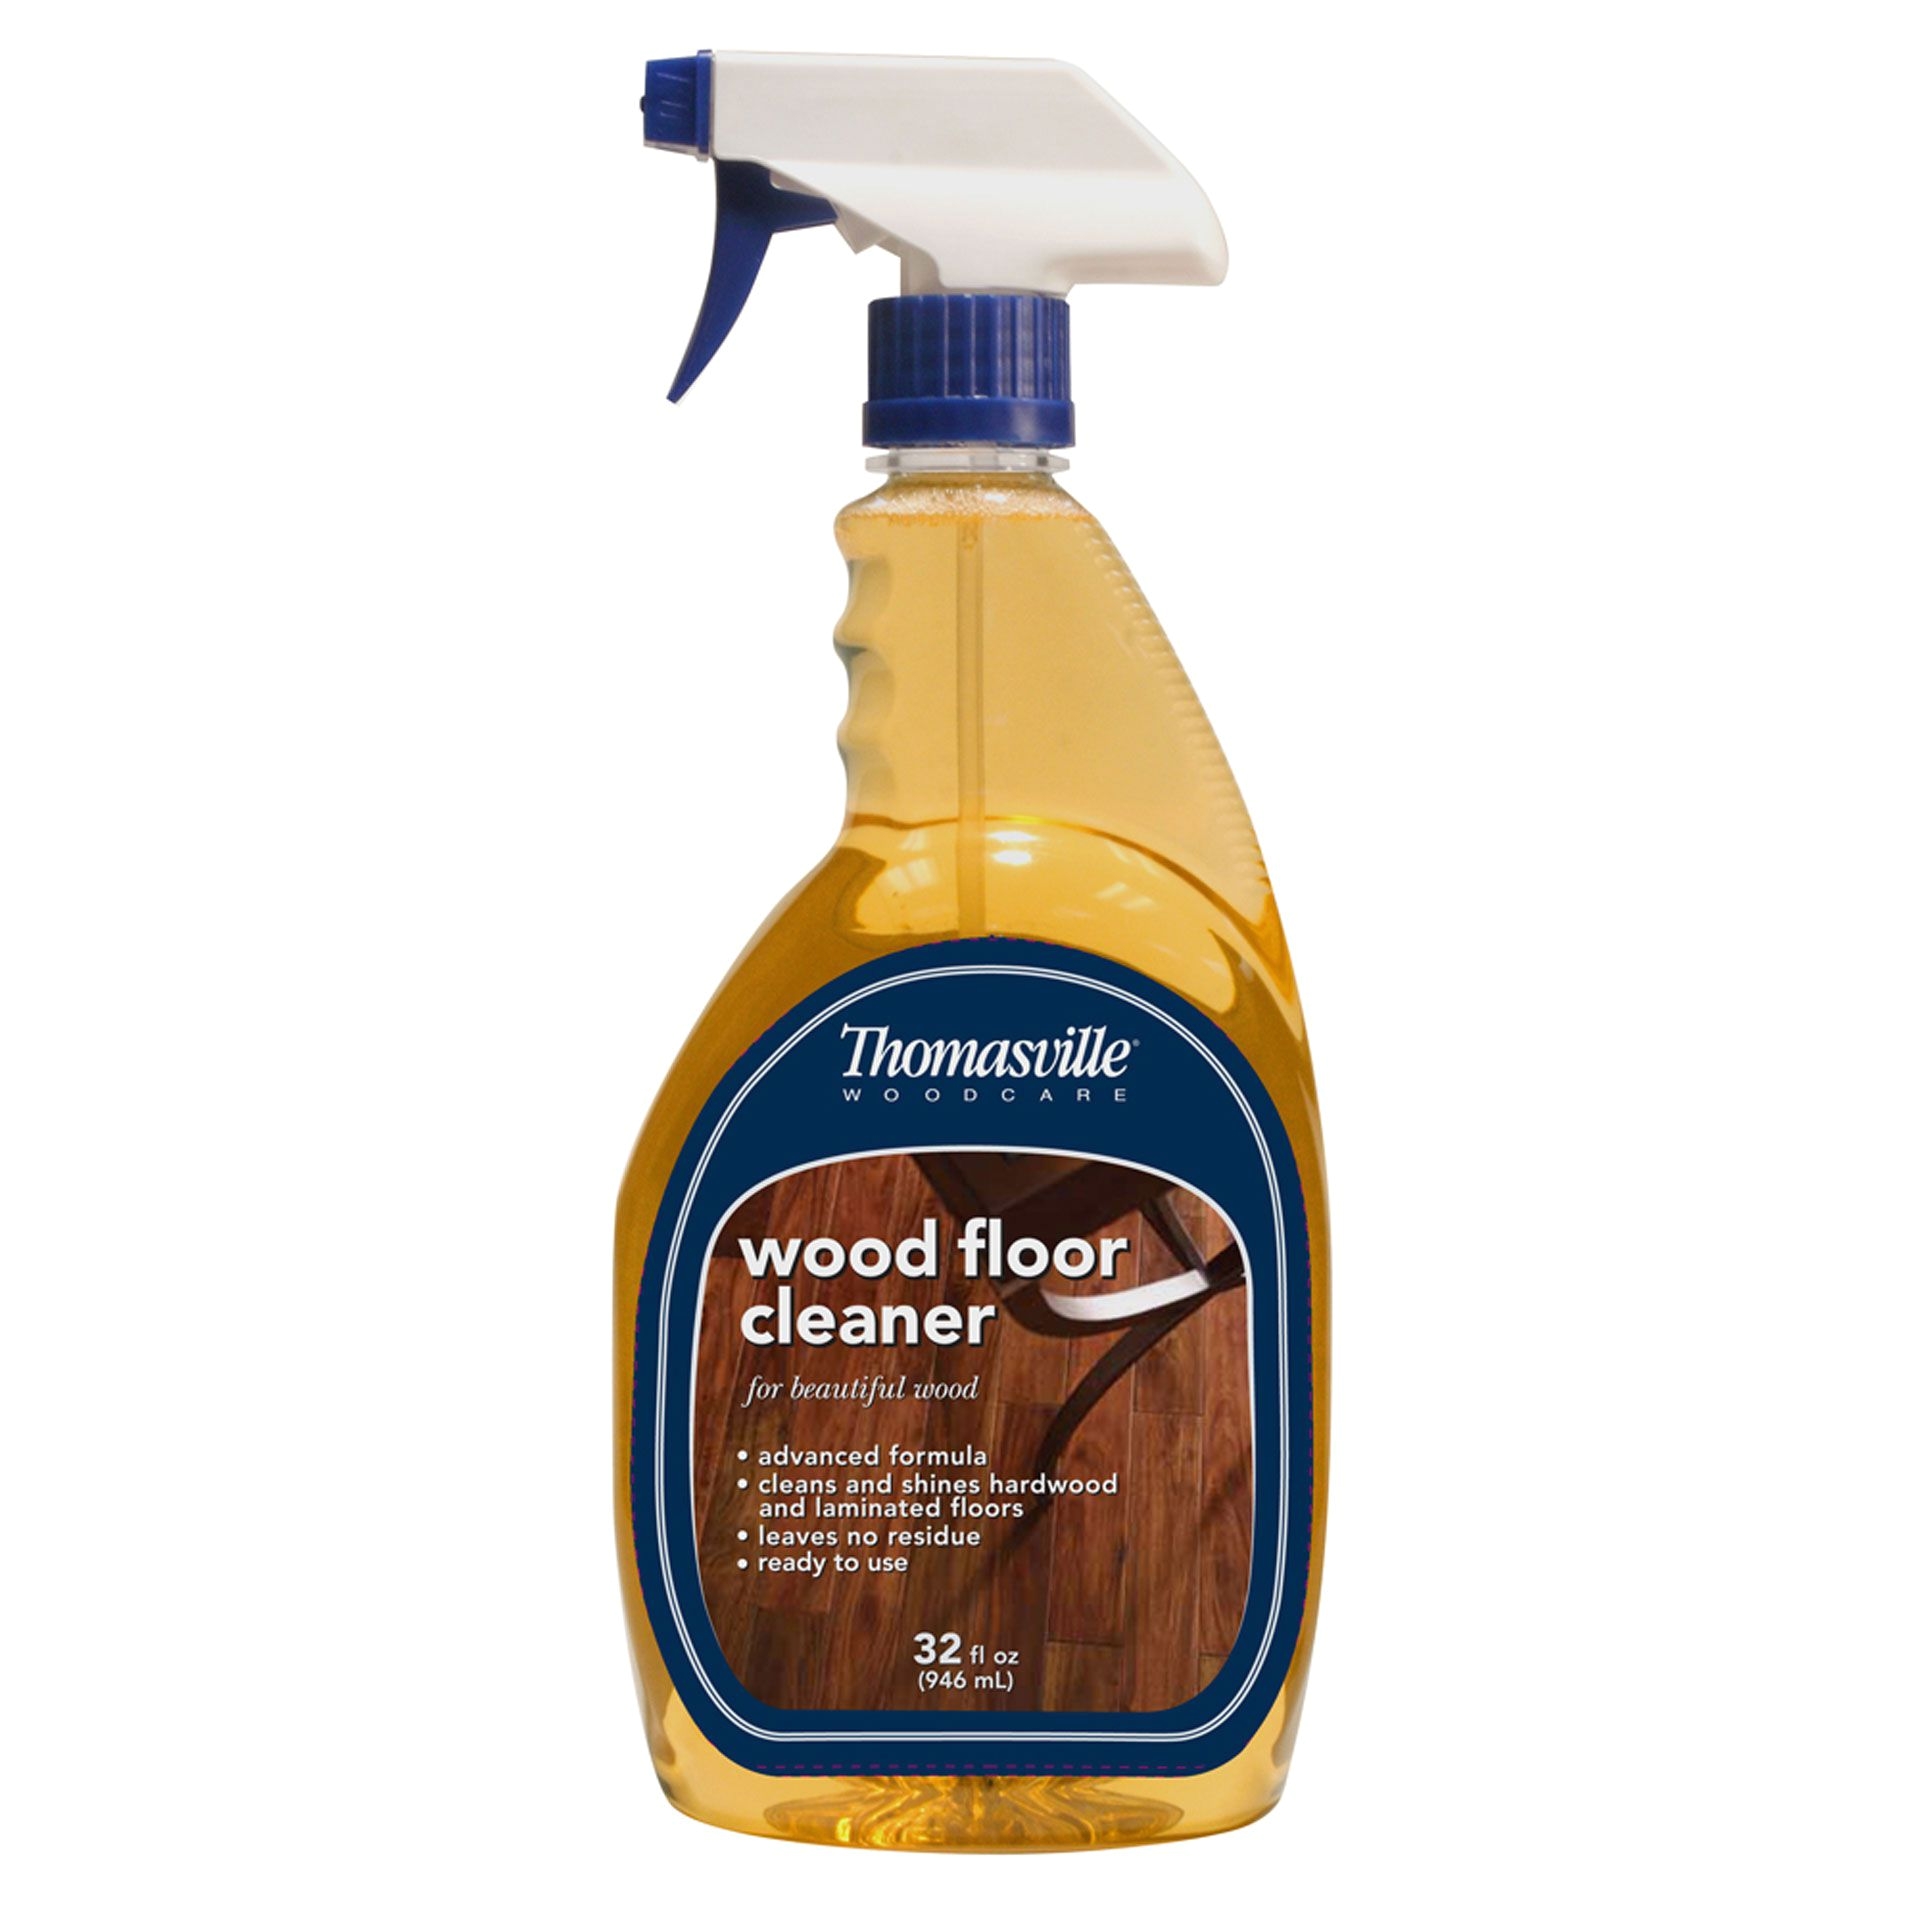 Weiman Hardwood Floor Cleaner Target Thomasville Wood Floor Cleaner Review